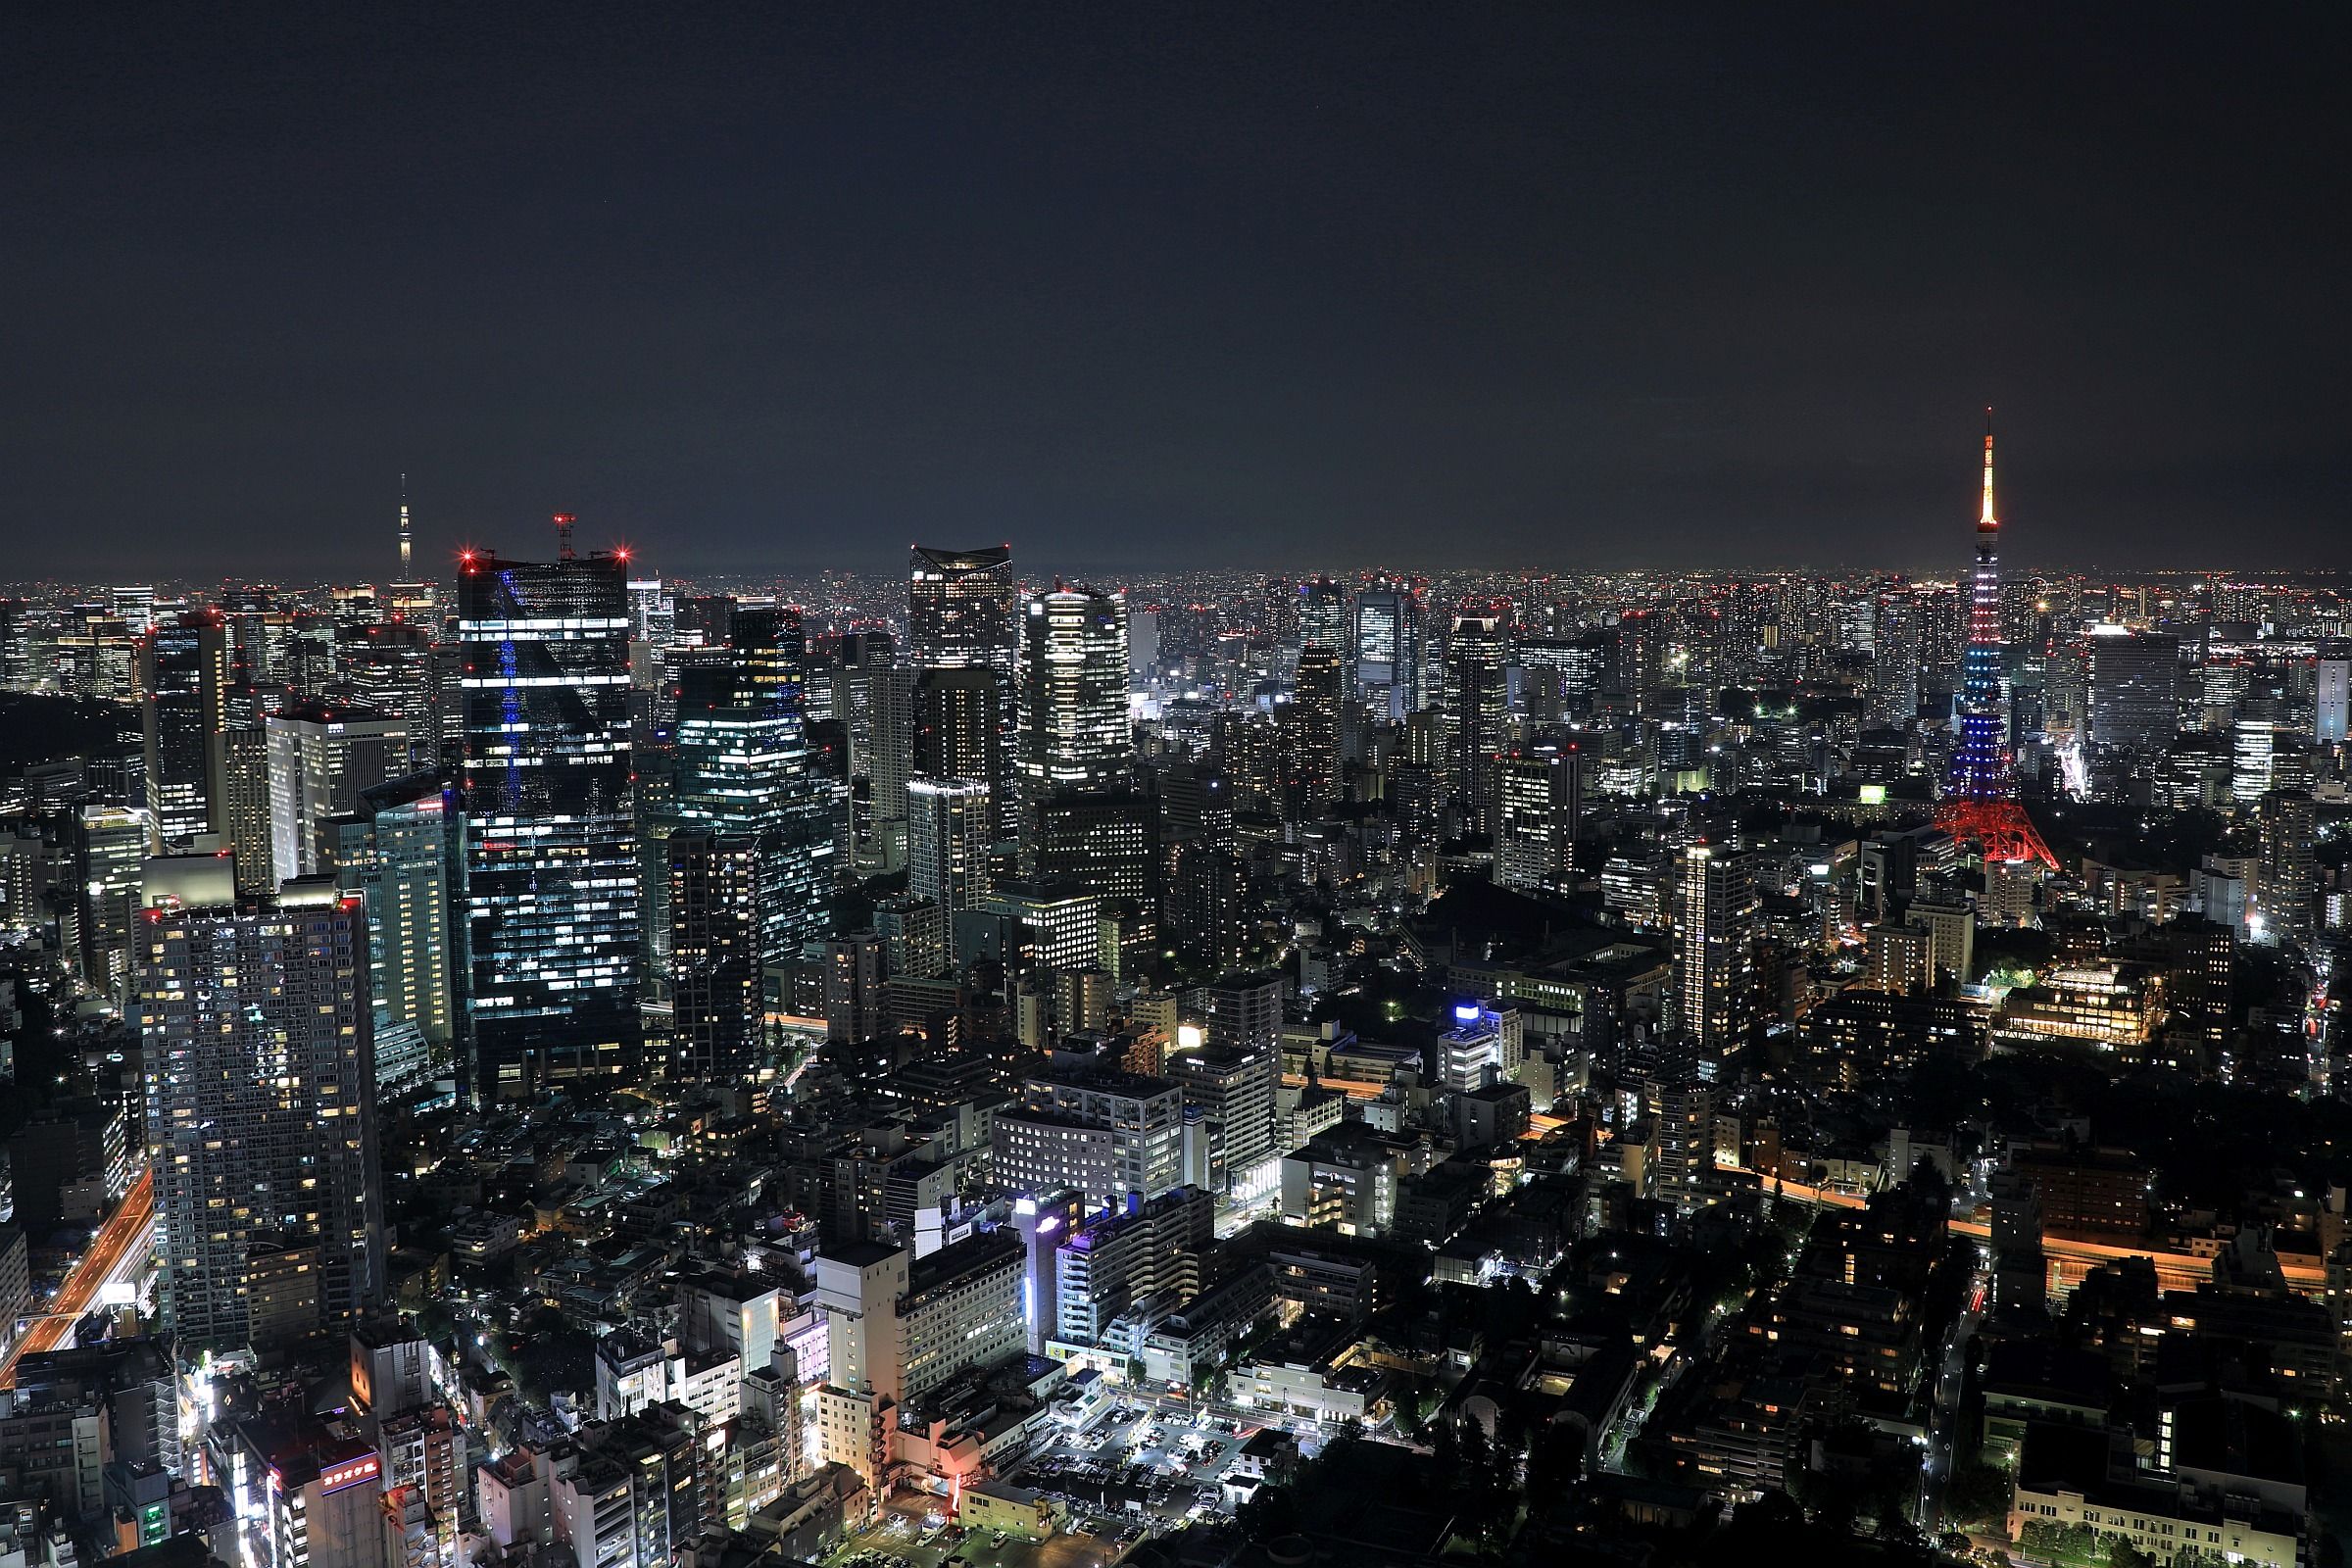 六本木ヒルズから撮影した東京タワーと東京スカイツリーのある夜景 17年10月27日 東京スカイツリー定点観測所